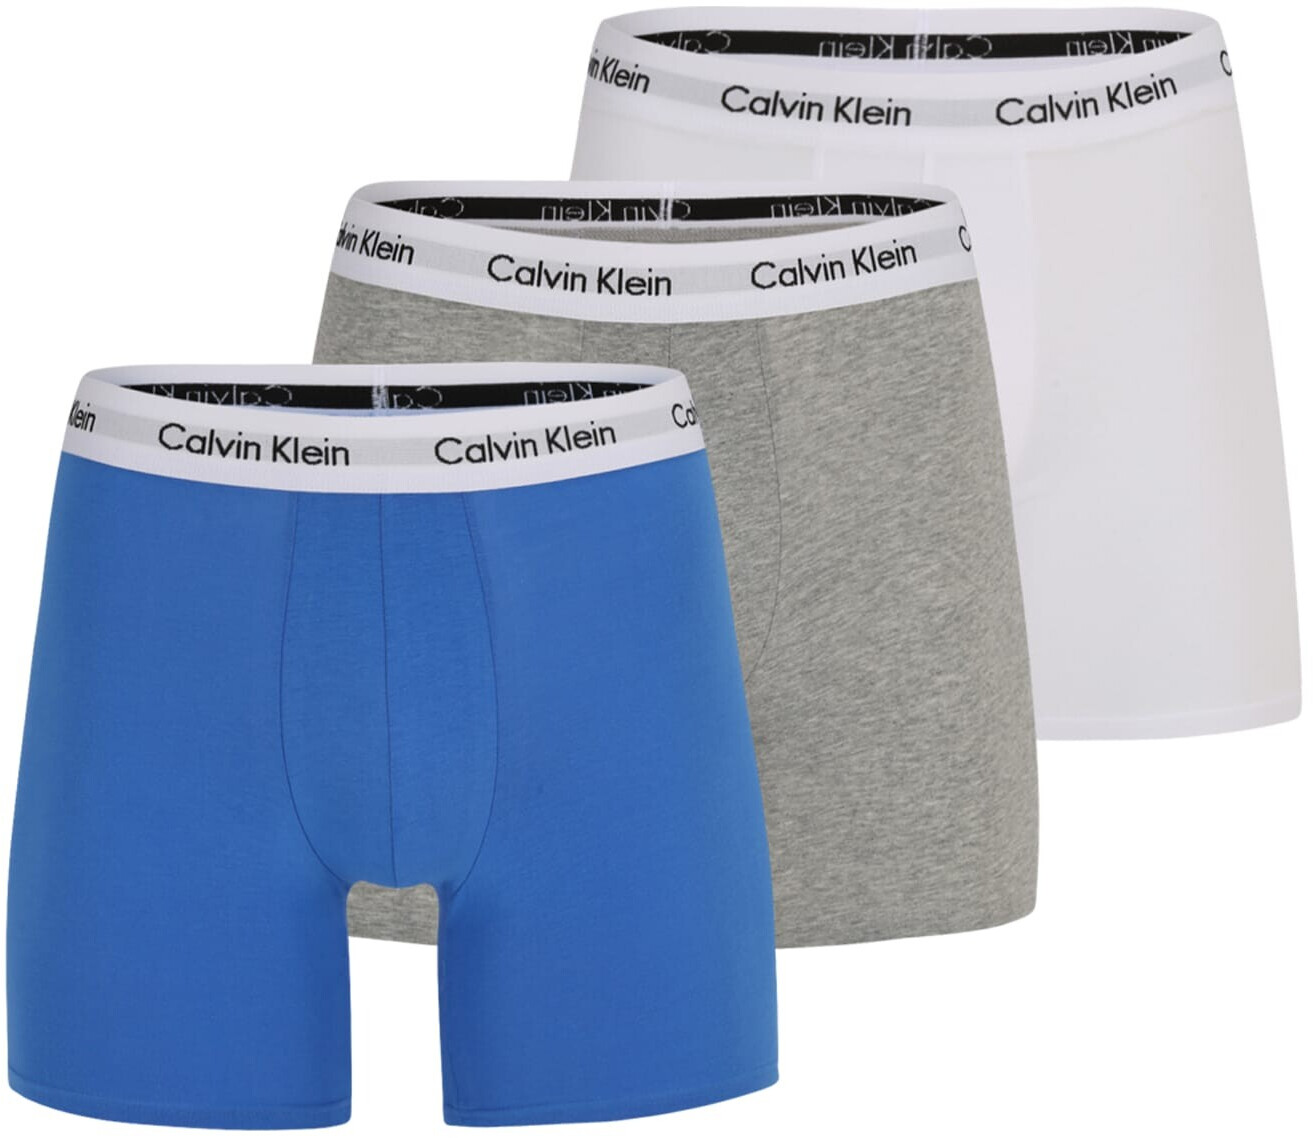 Calvin Klein Blue Trunks, Calvin Klein Boxers, Men's Underwear